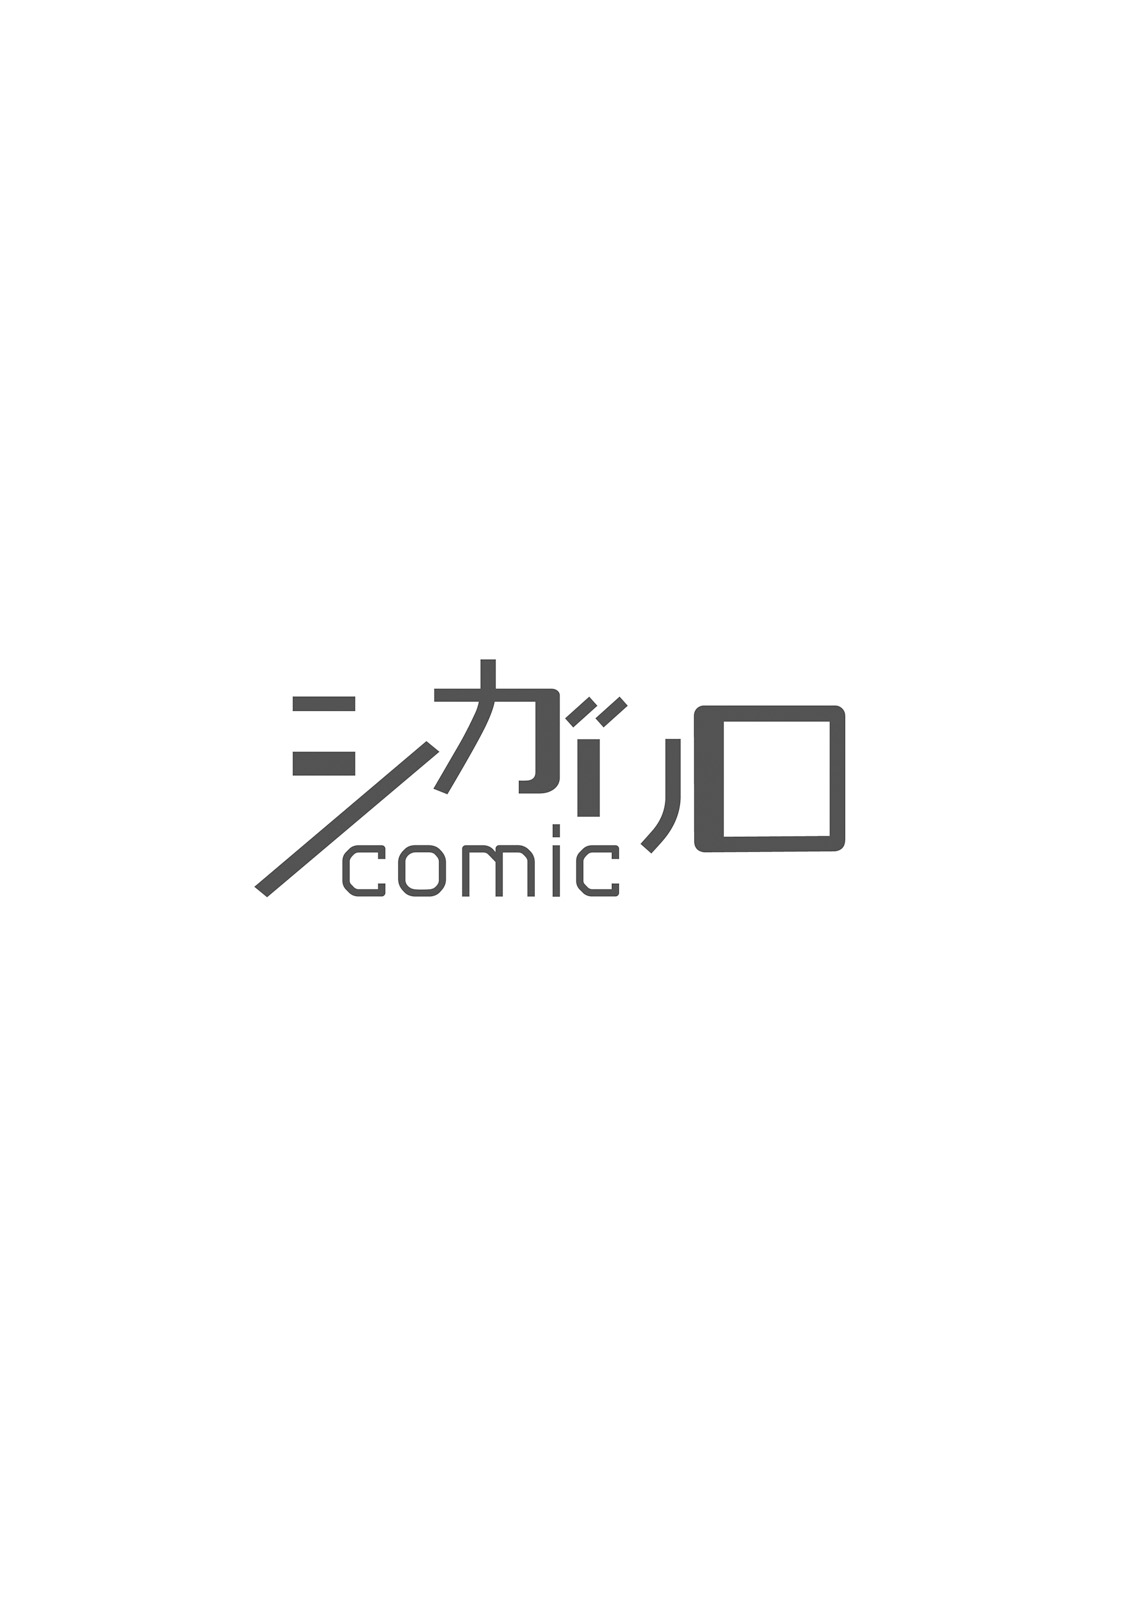 [Wakachiko] Uriotoko ni Kaiotoko [Digital] [わかちこ] 売りオトコに買いオトコ [DL版]